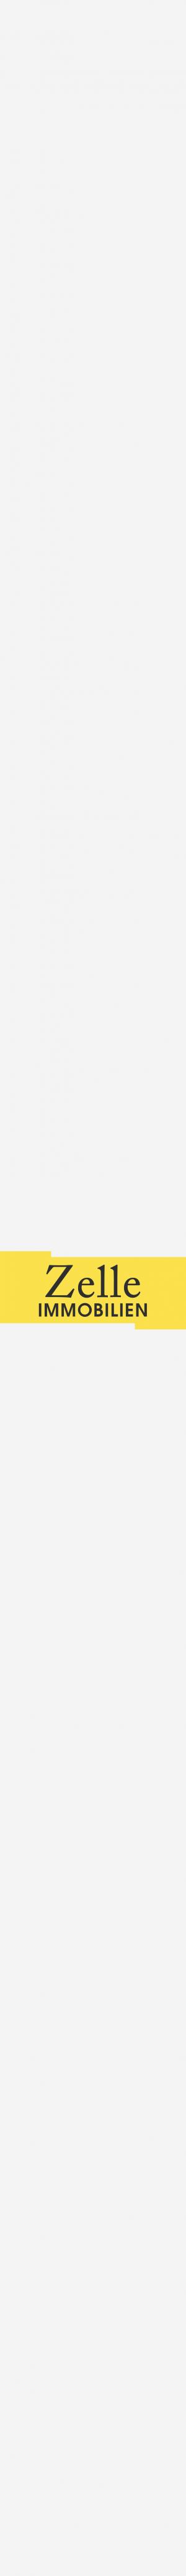 www.zelle-immobilien.de